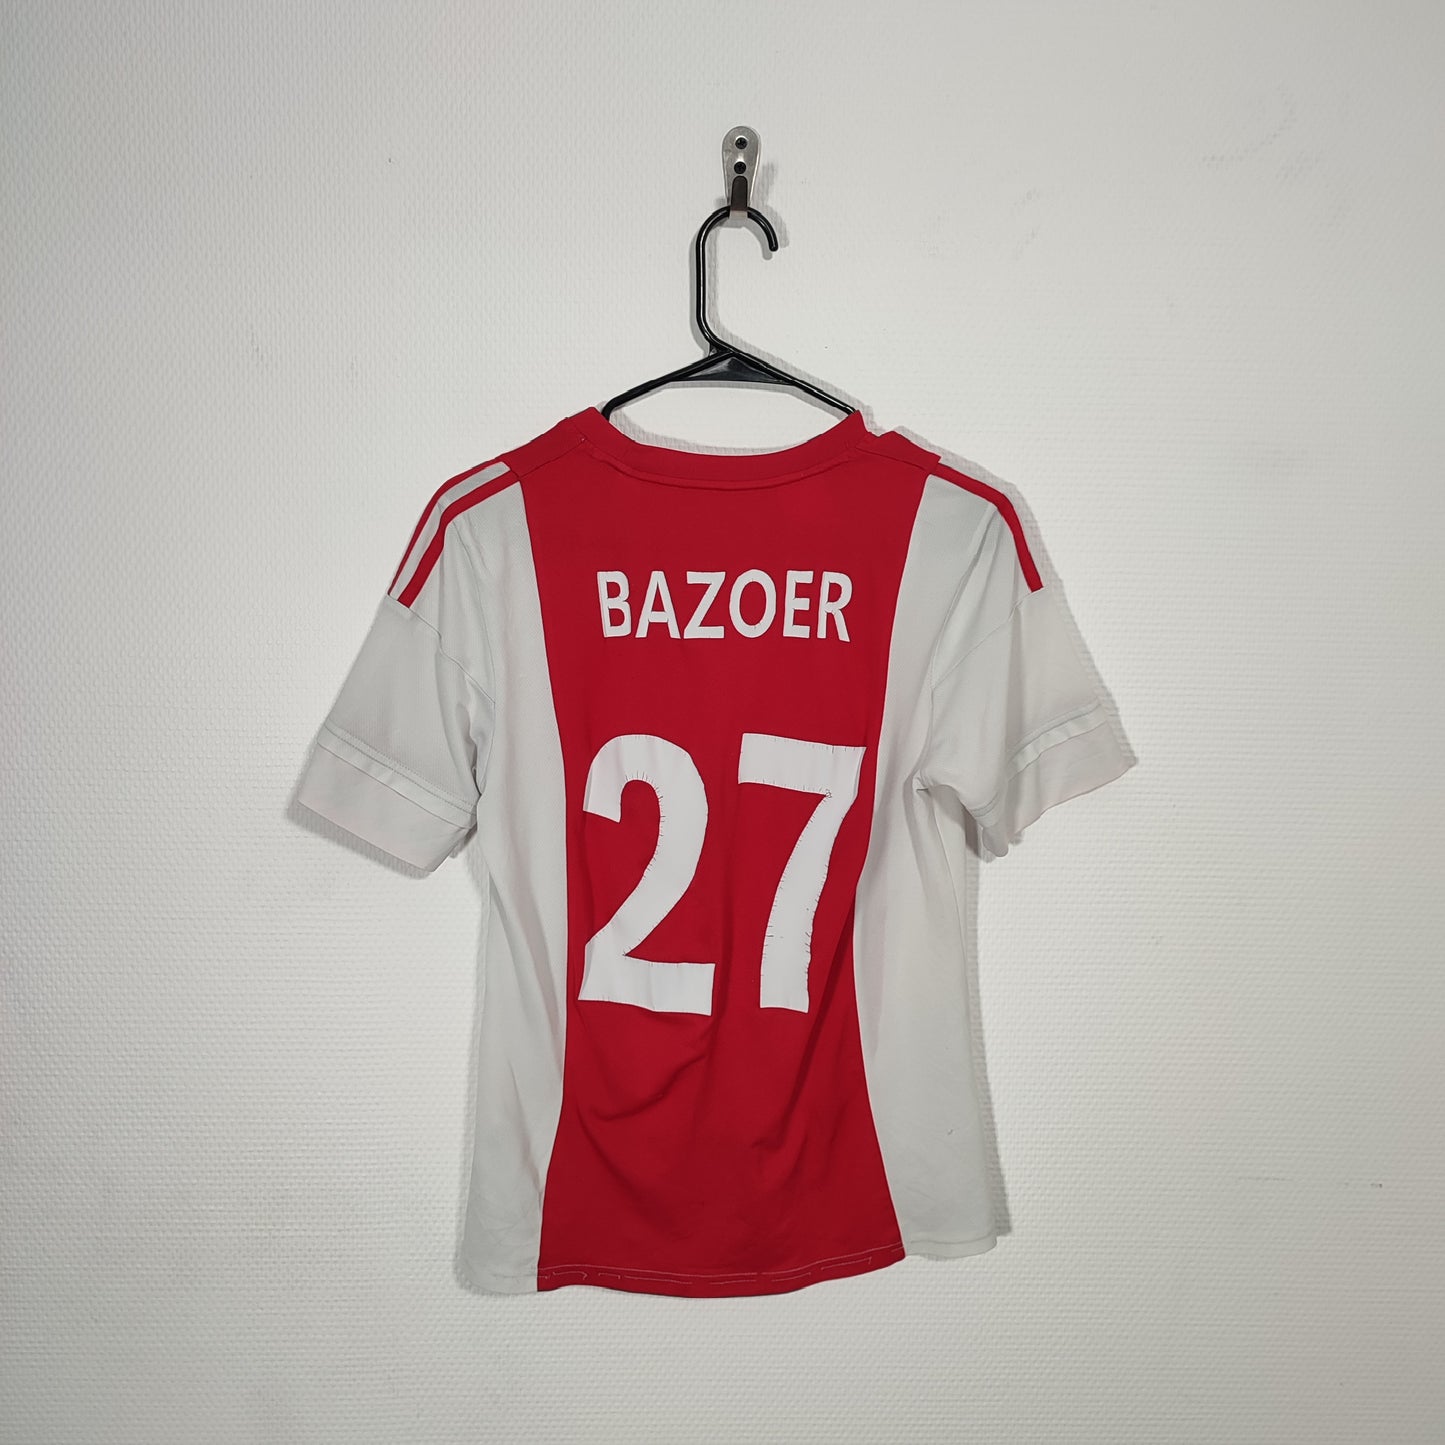 Maillot de foot Ajax "Bazoer" - XS